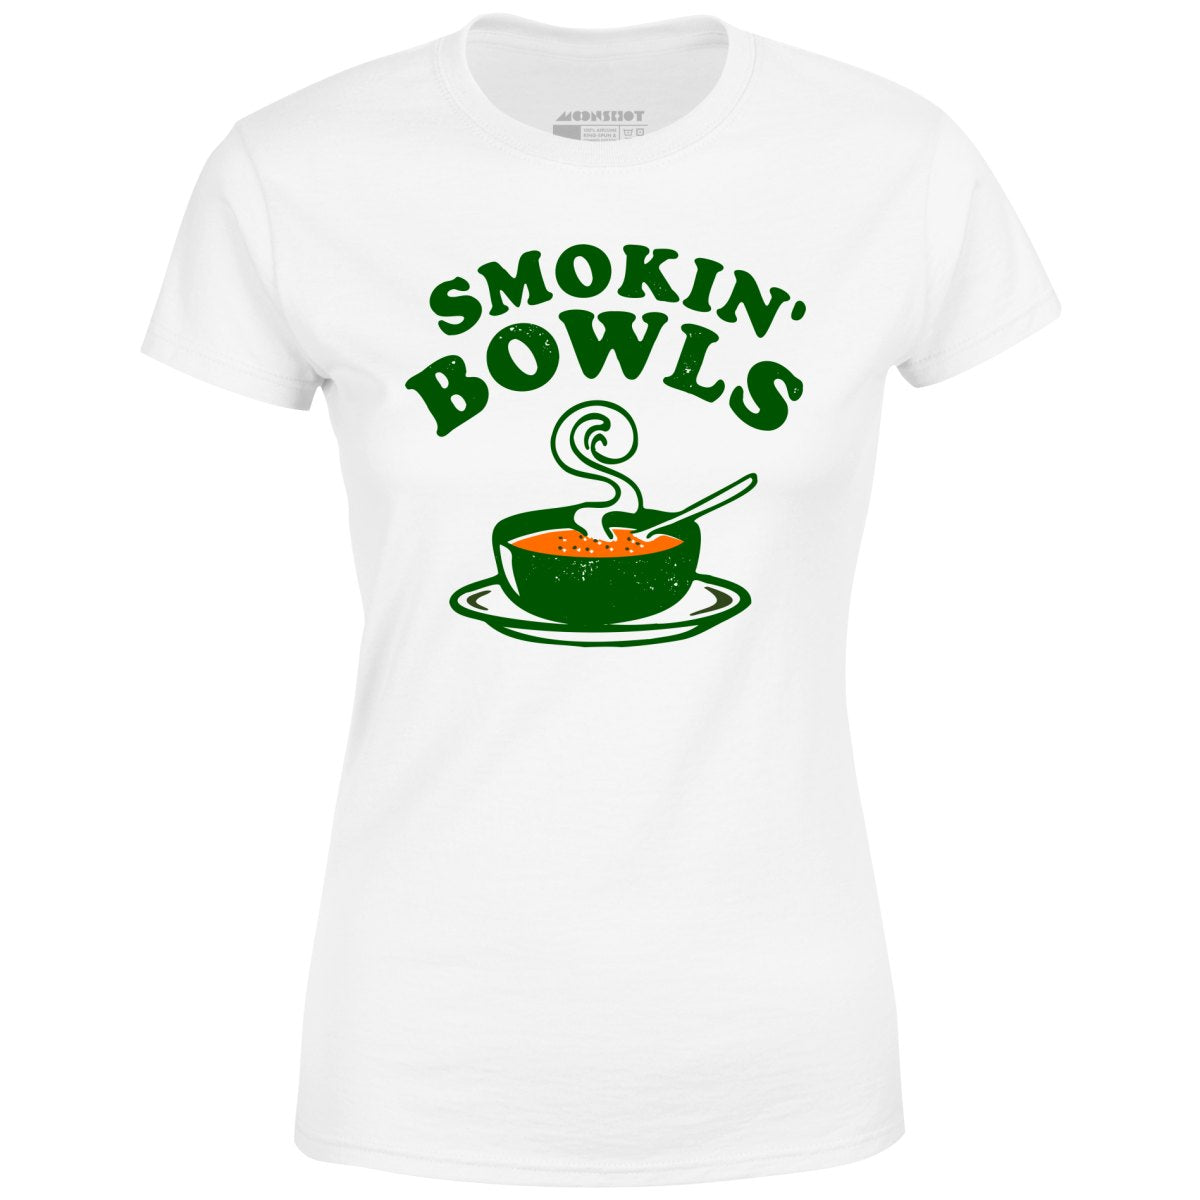 Smokin' Bowls - Women's T-Shirt